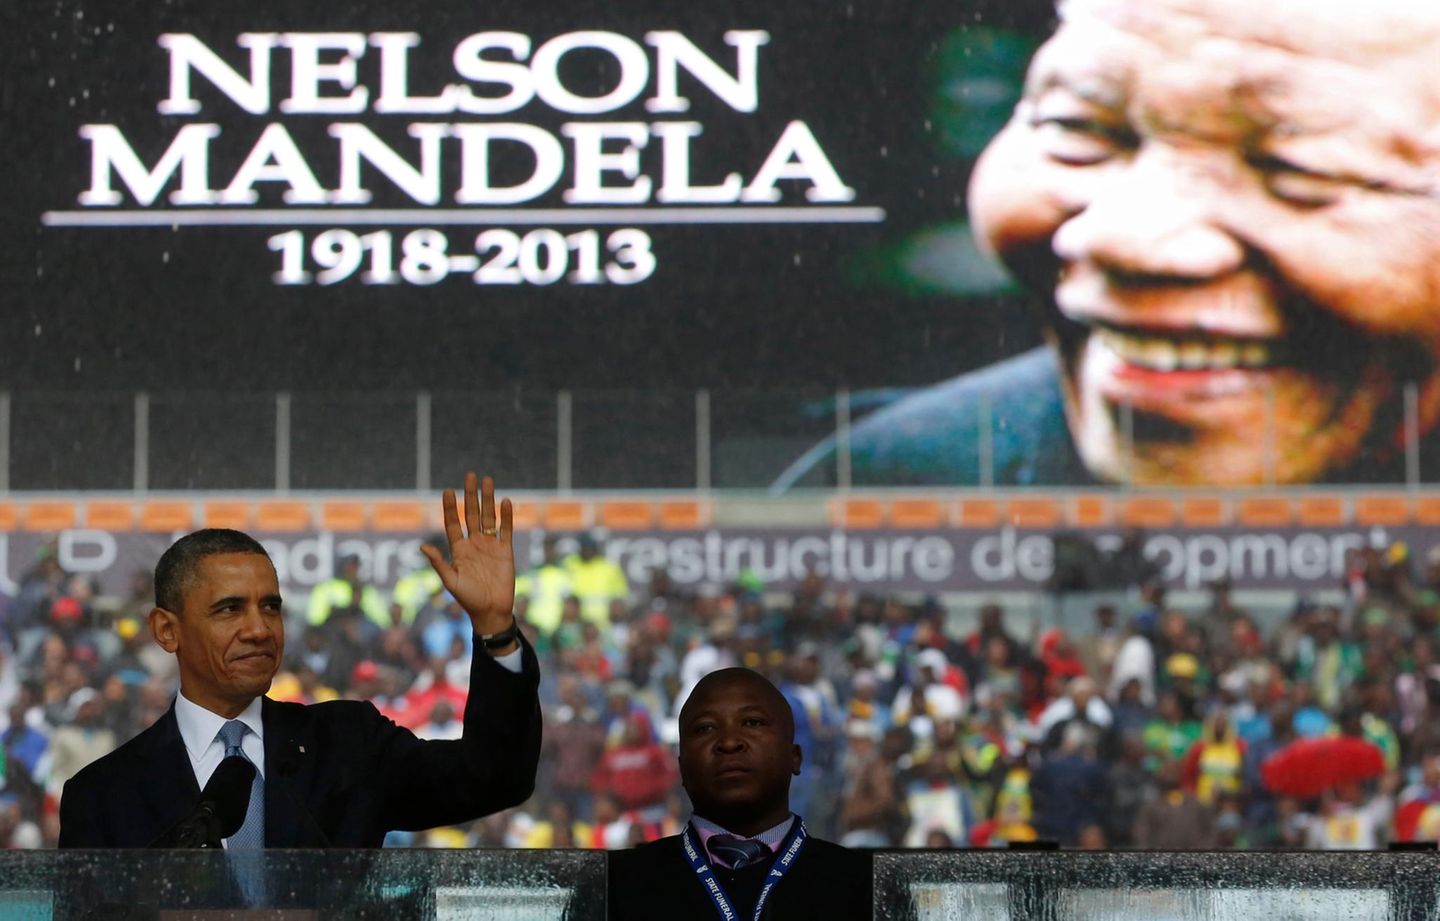 Im Fußballstadion von Johannesburg findet die offizielle Trauerfeier für Nelson Mandela statt. Trotz Regen sind tausende Anhänger gekommen. U.S. Präsident Barack Obama hält eine Rede in Gedenken an den verstorbenen Nobelpreisträger.